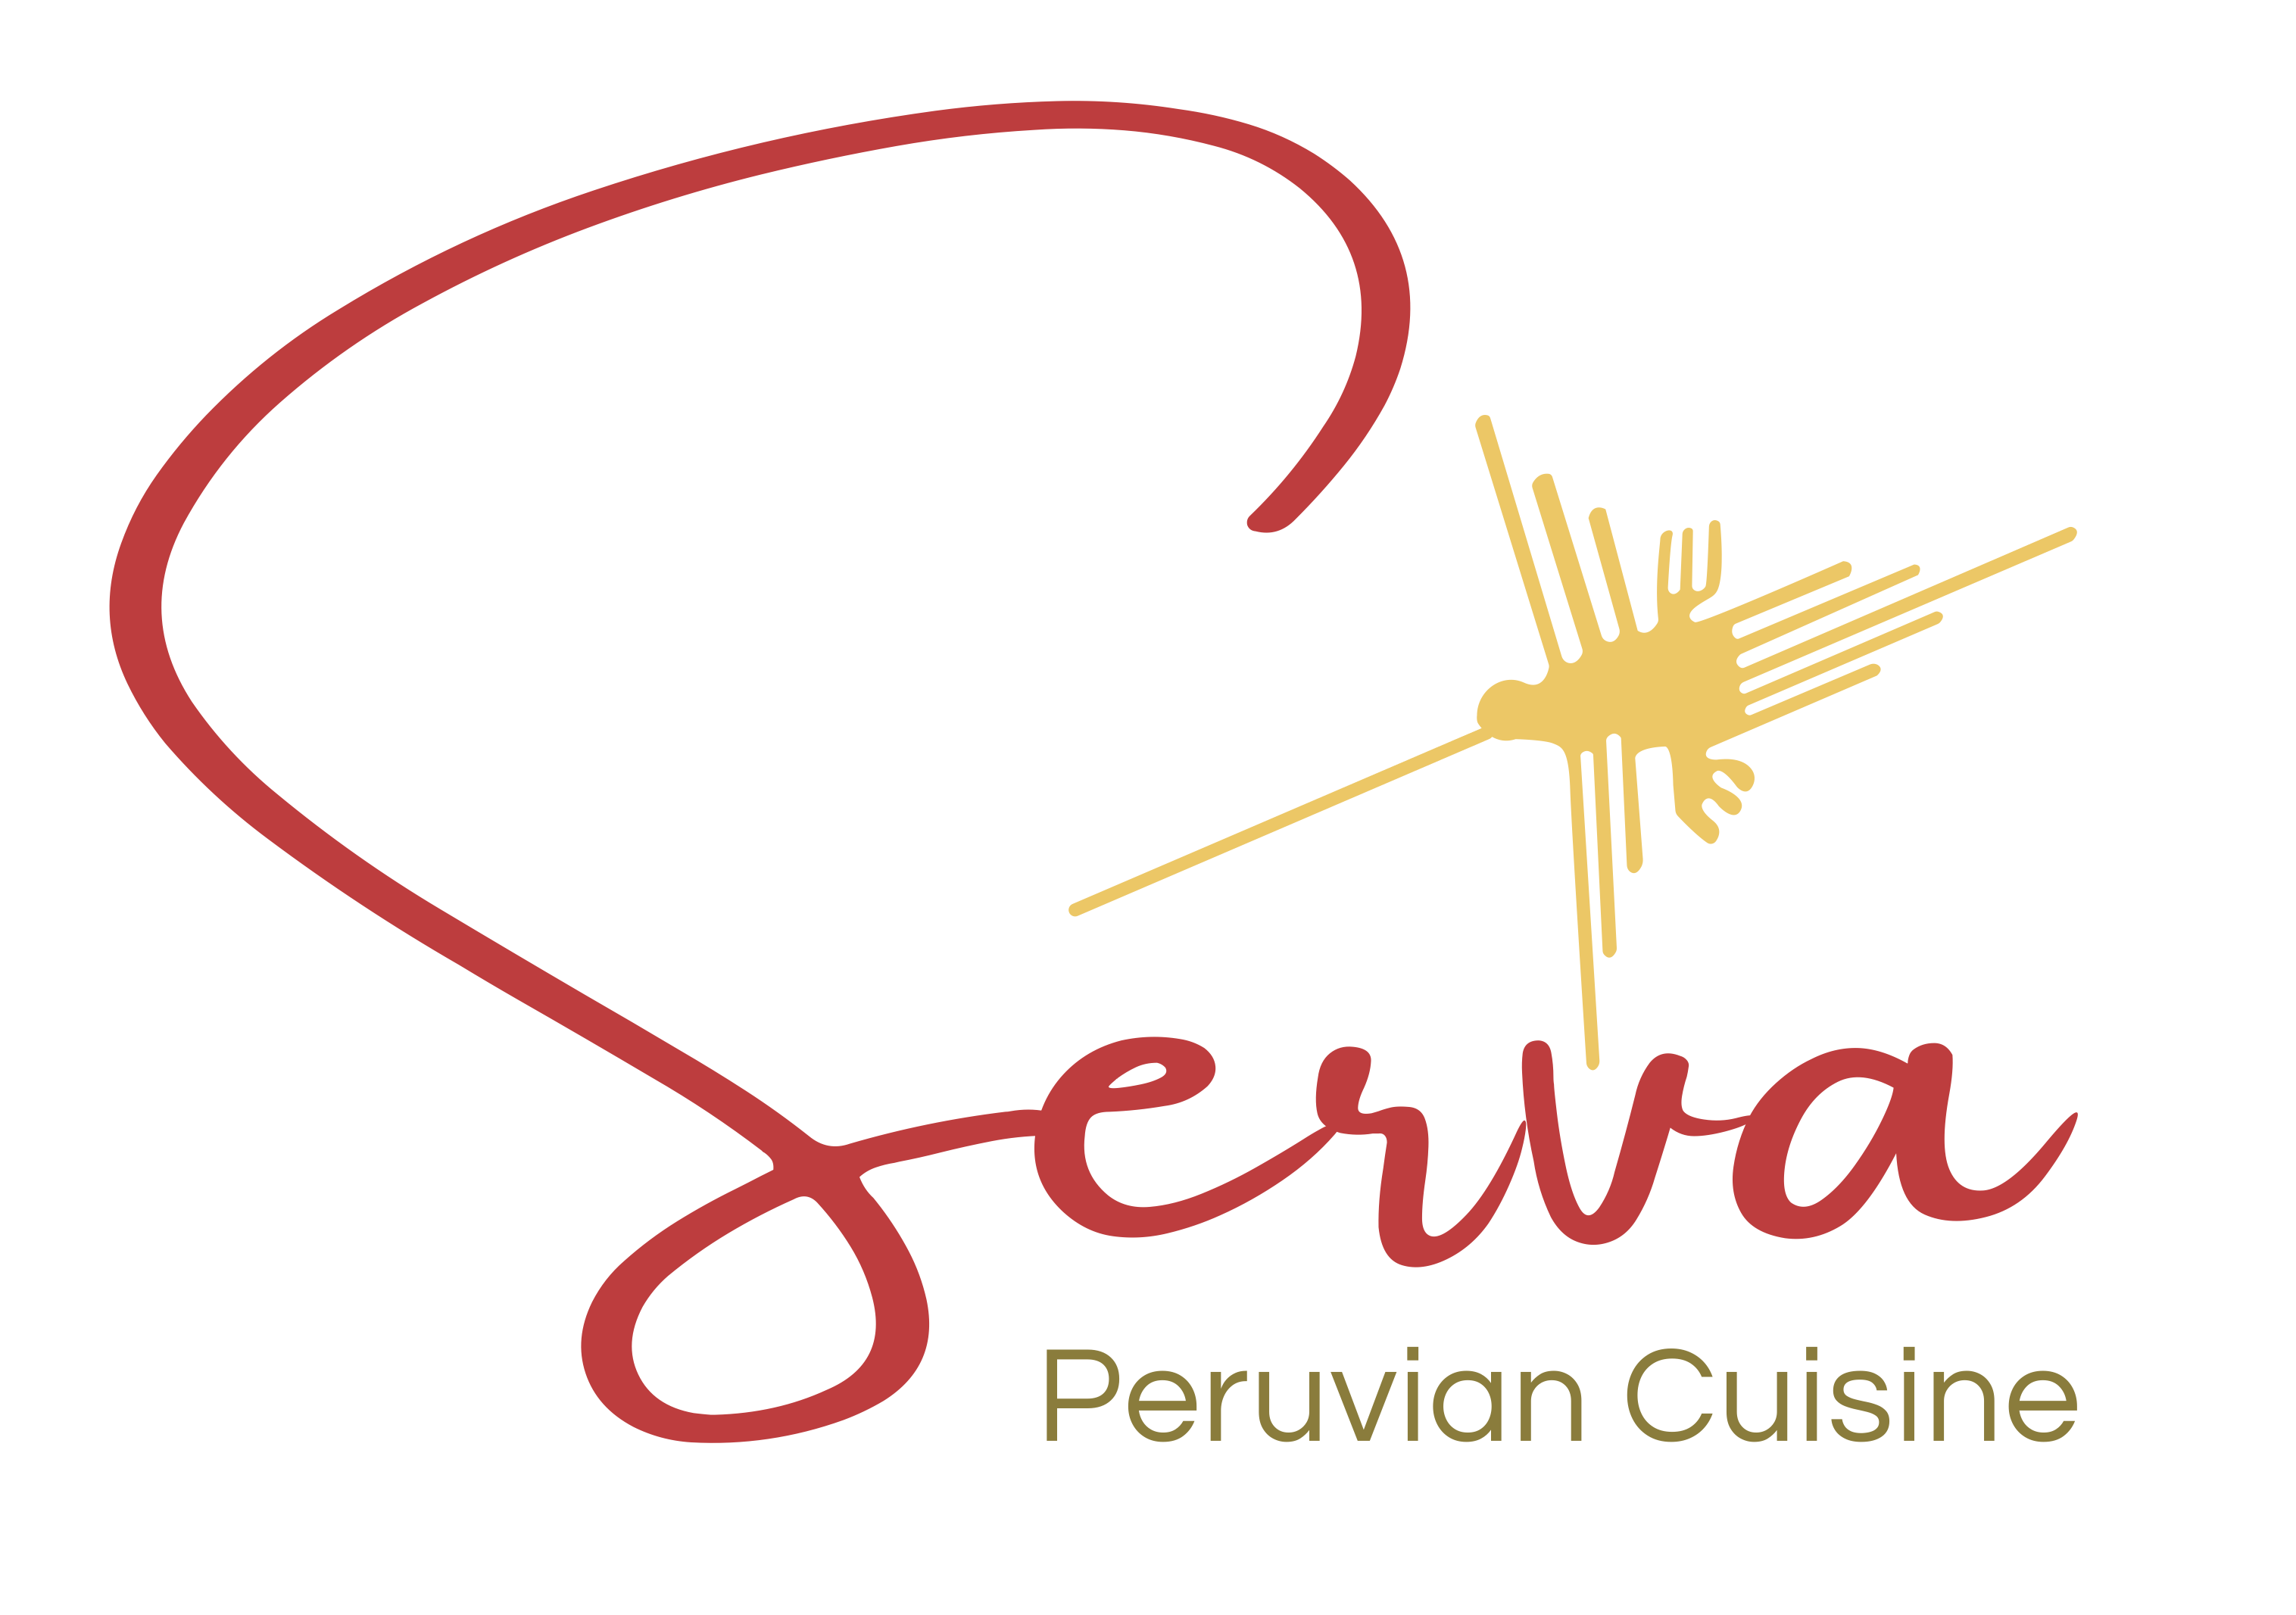 Serva Peruvian Cuisine